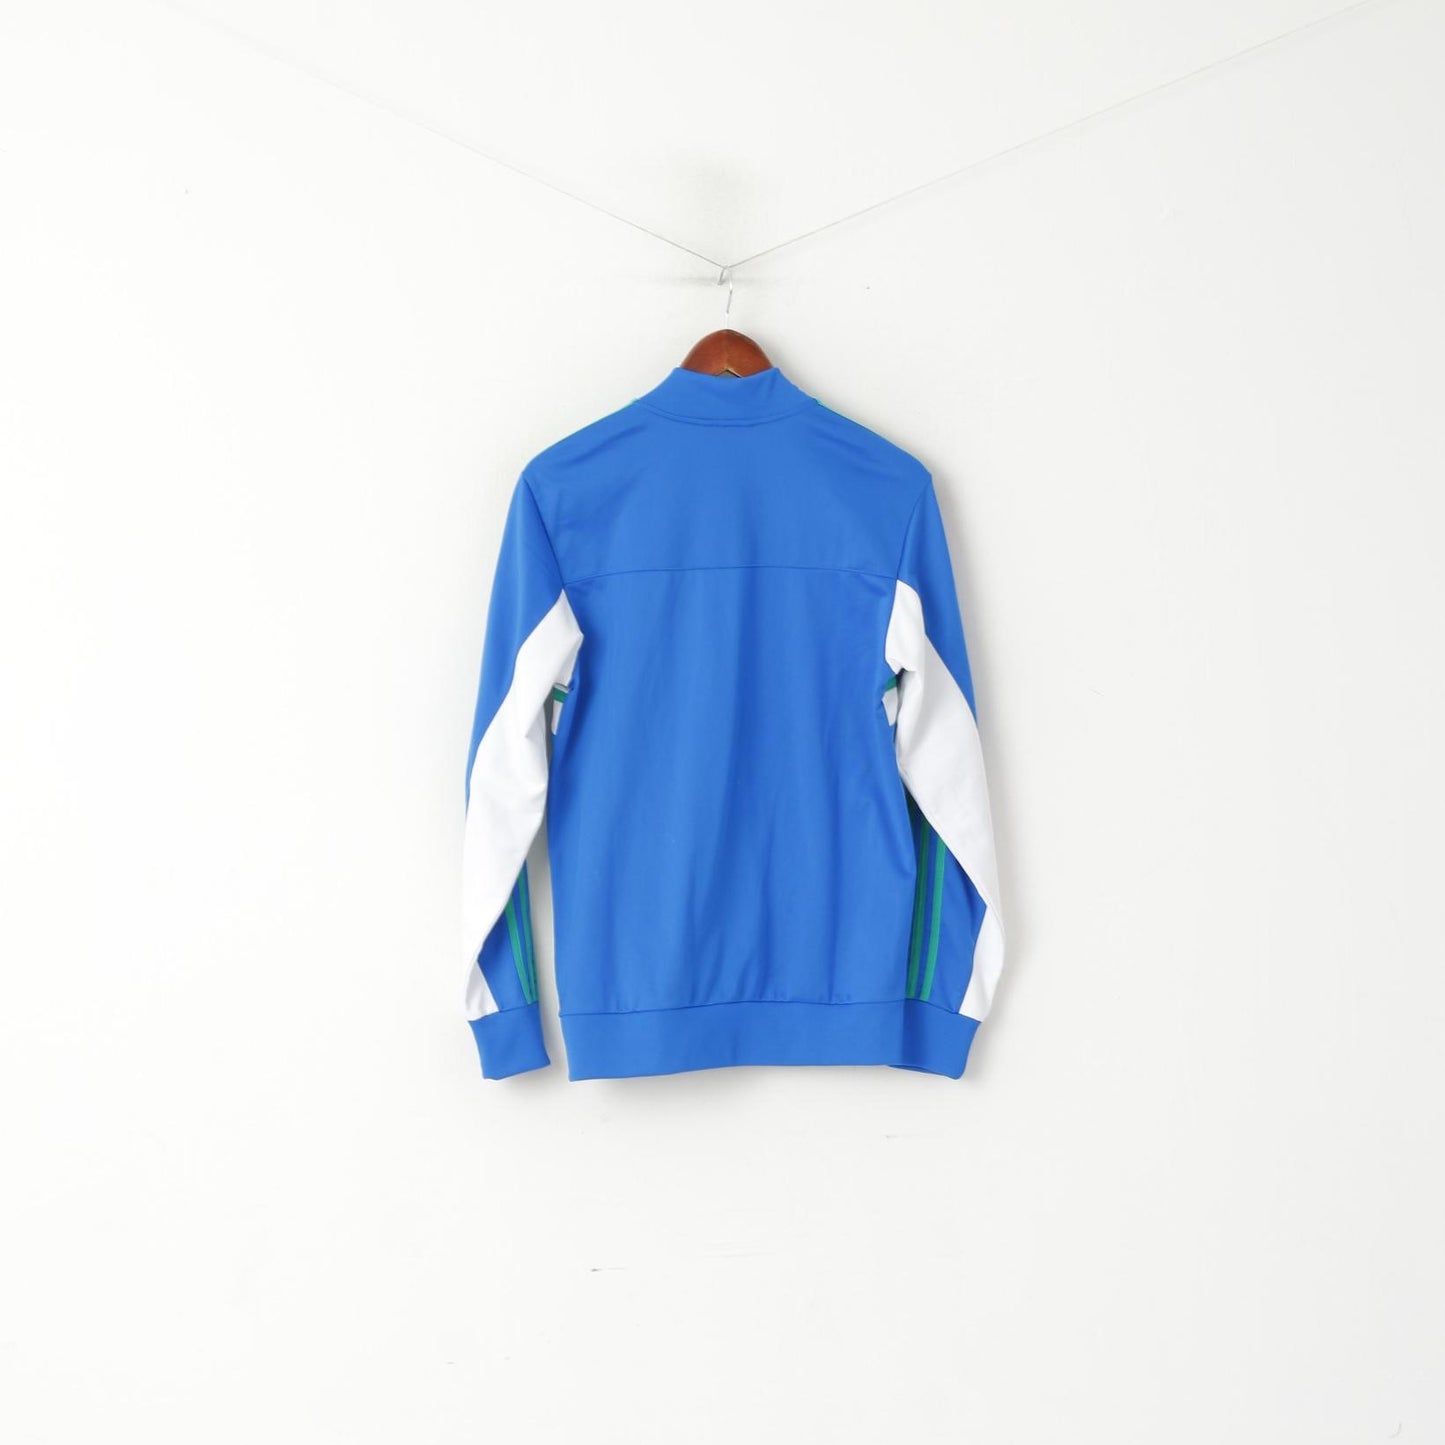 Adidas Men S Sweatshirt Bleu Brillant Climalite Full Zipper Activewear Track Top